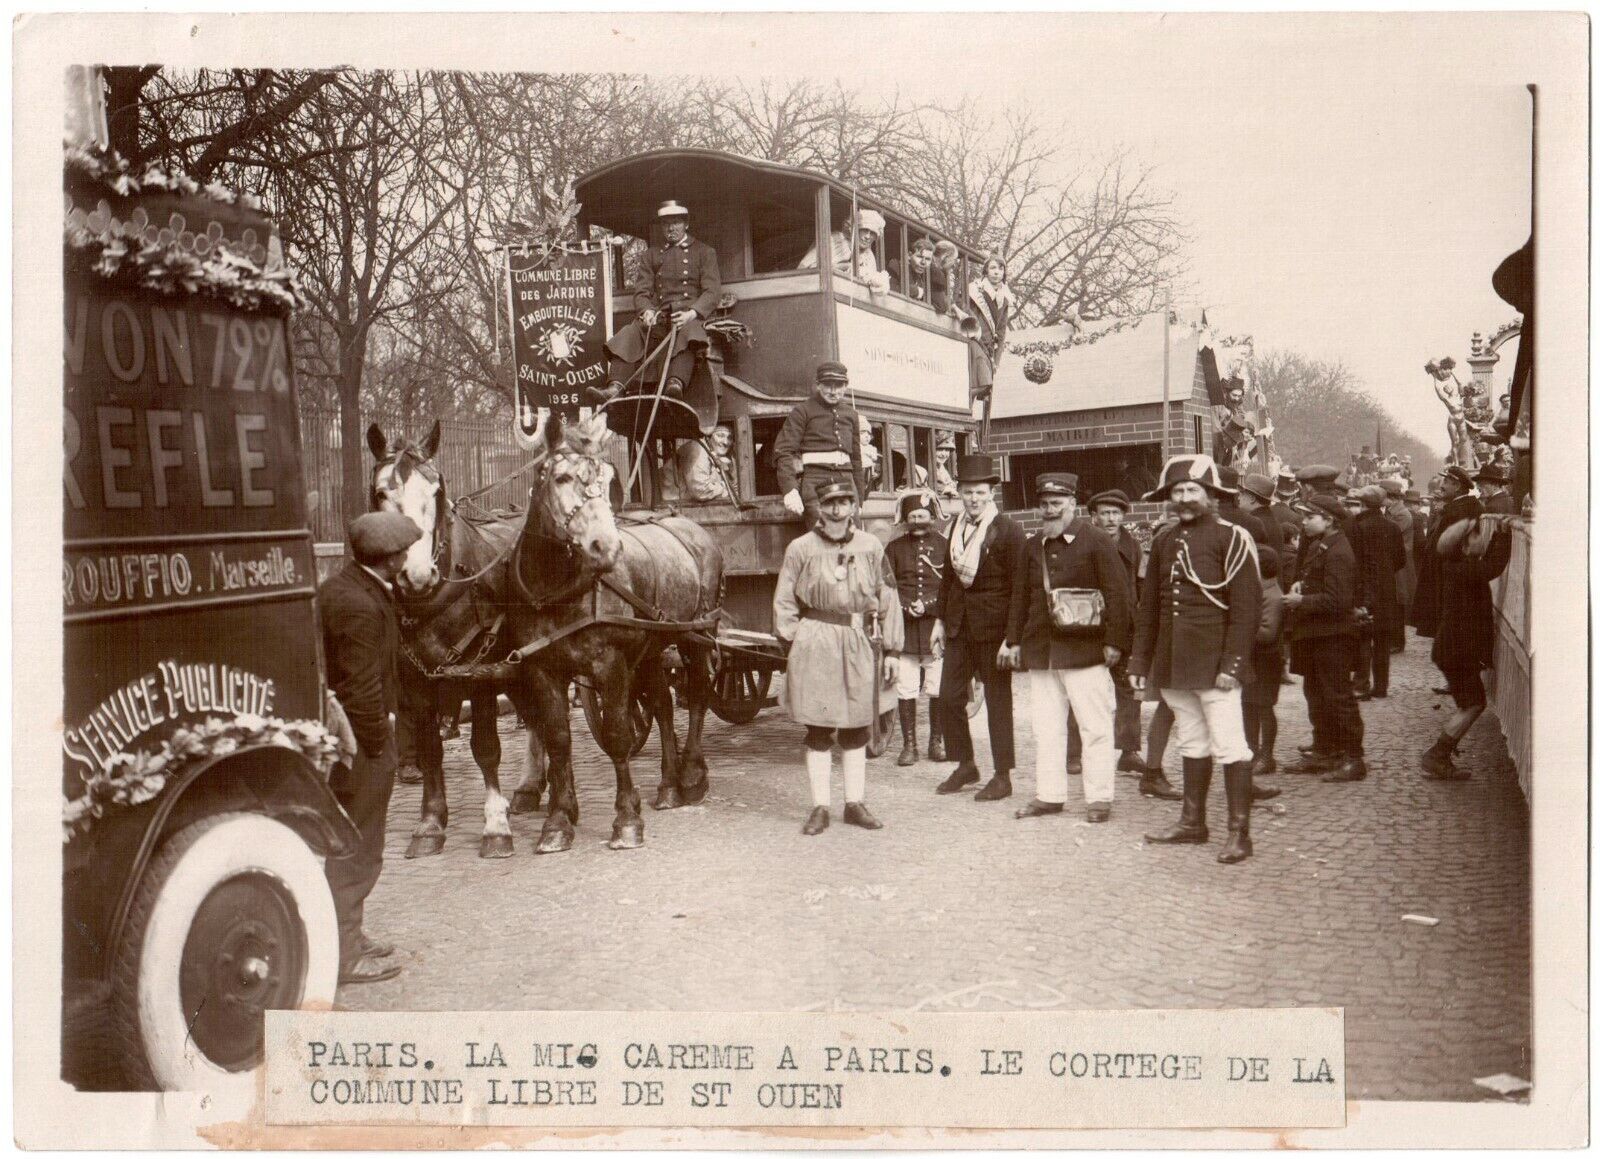 Paris 1928.Mid-Lent.Cortège de la Commune Libre de St Ouen.Photo Agency ROL.